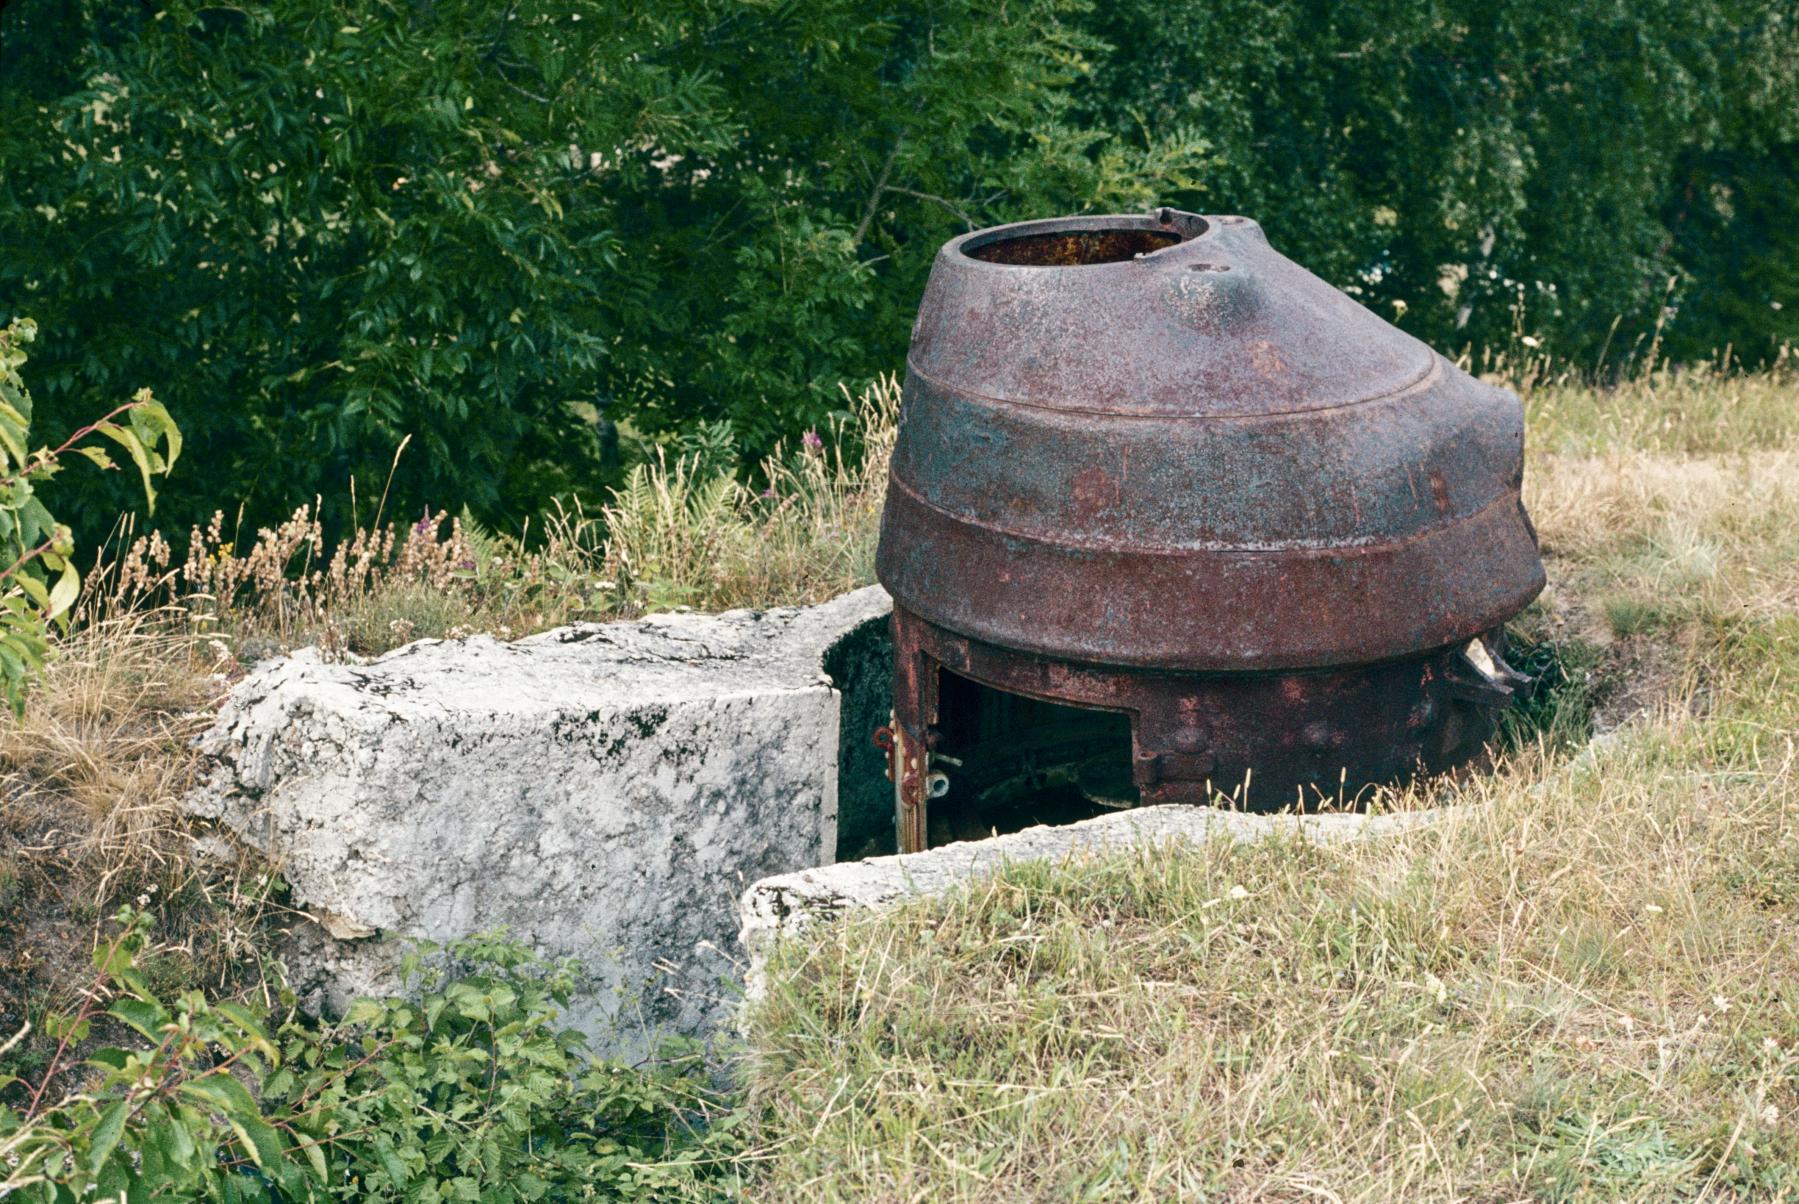 Ligne Maginot - AMODON (TD N° 600) - (Cuve pour arme d'infanterie) - La tourelle en 1982
La cuve bétonnée est bien visible sur la photo